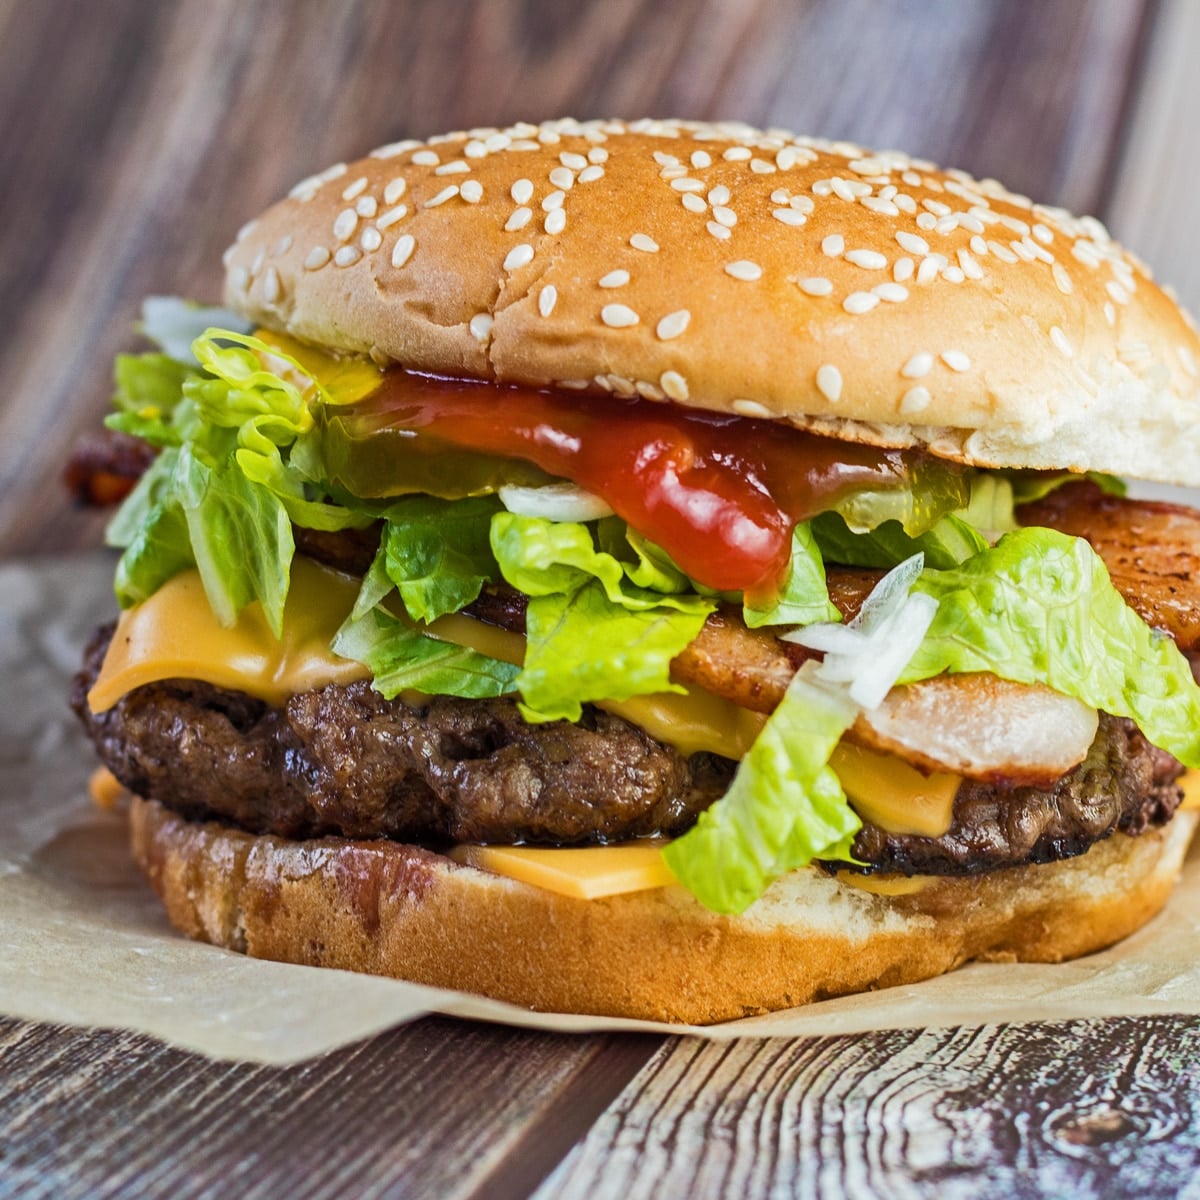 Čtvercový obrázek cheeseburger s hlávkovým salátem.